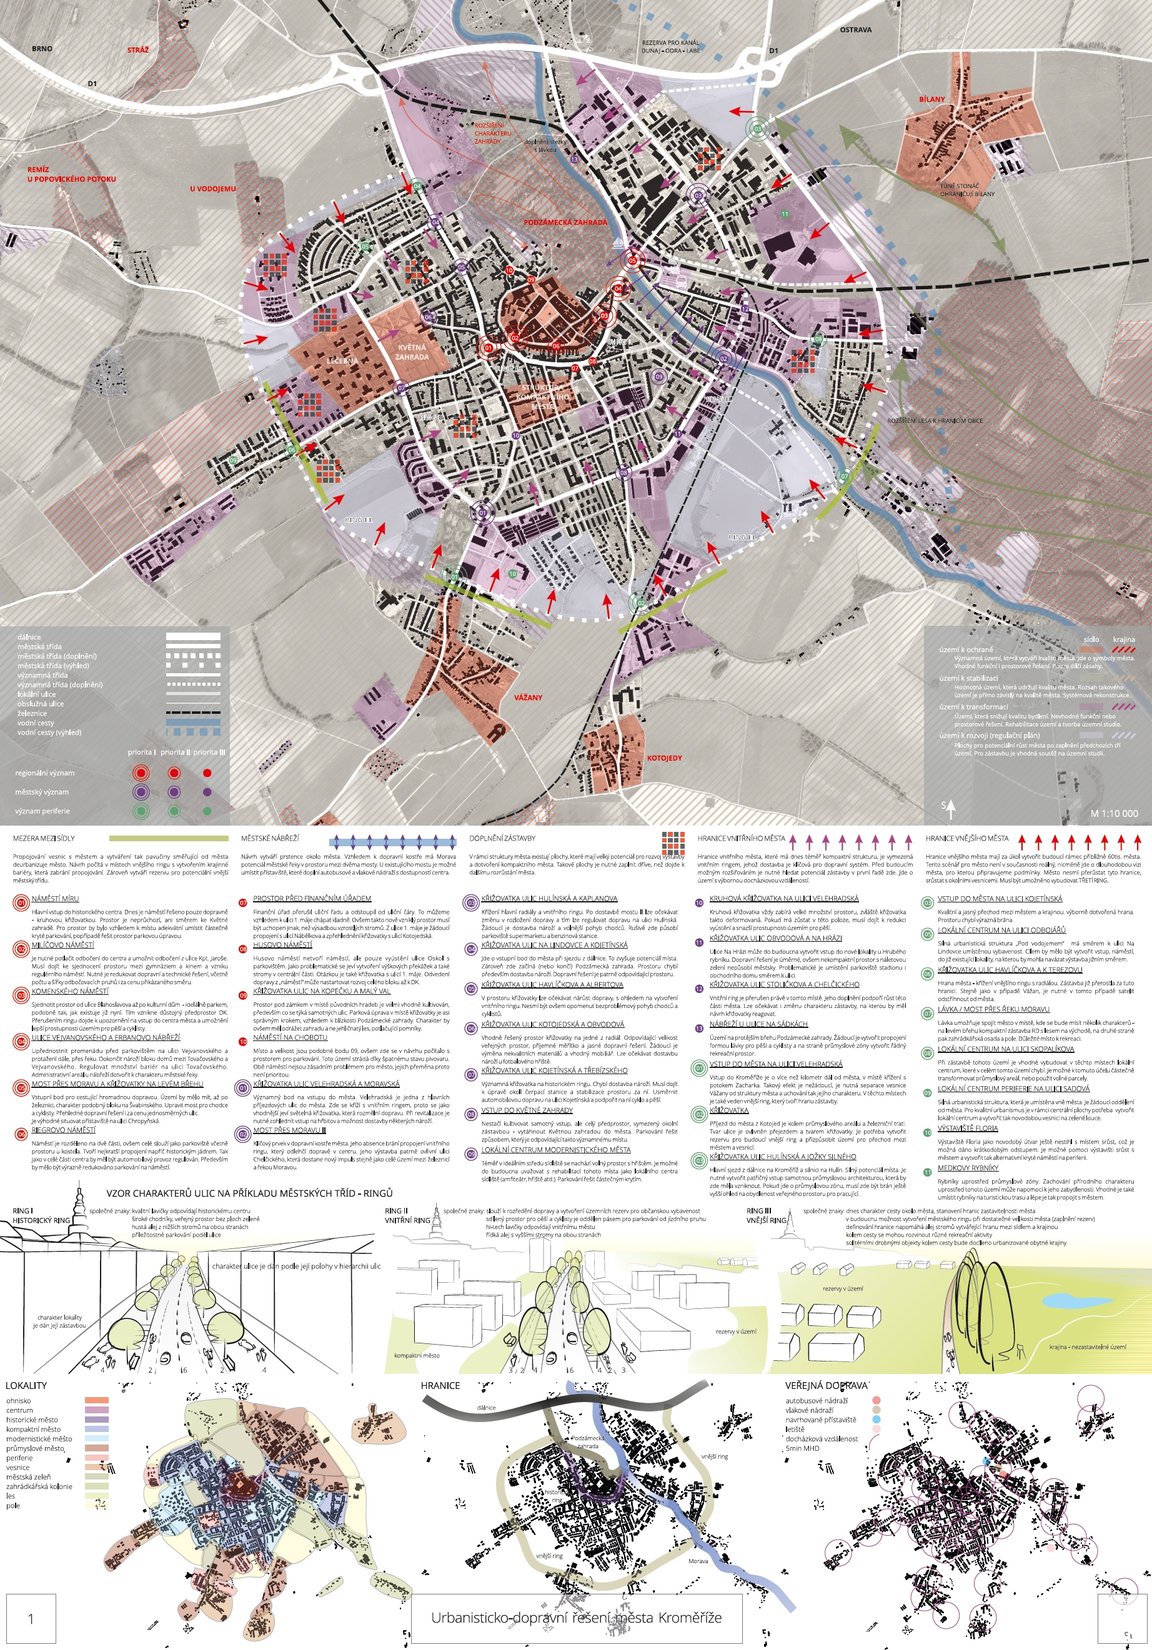 Urbanisticko-dopravní řešení města Kroměříže